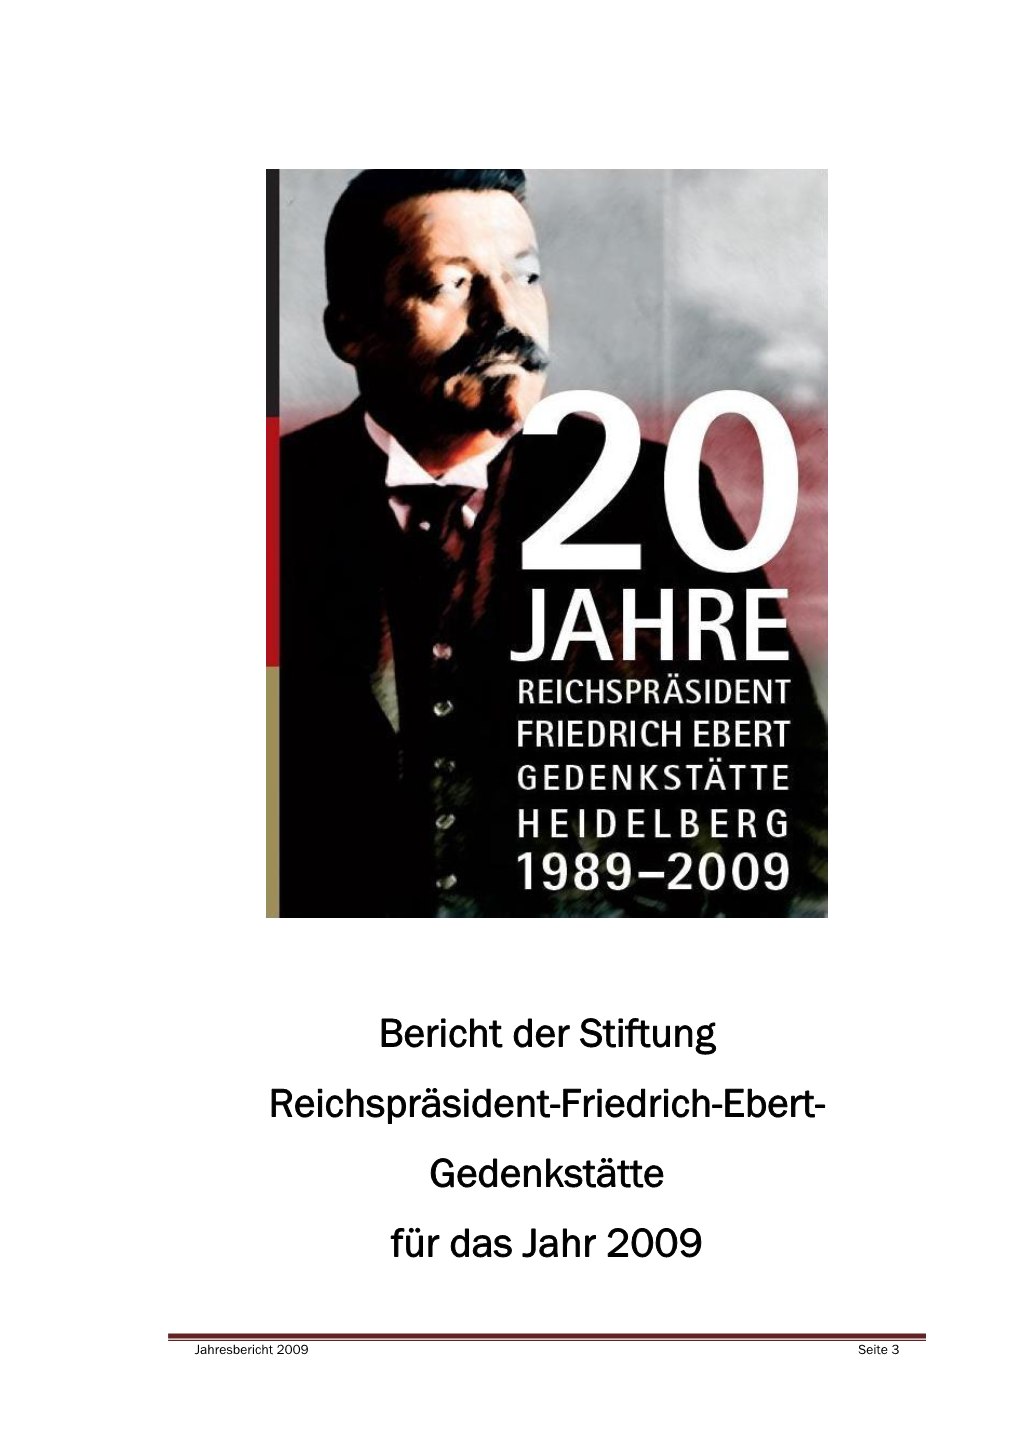 Stiftung Reichspräsident-Friedrich-Ebert- Gedenkstätte Für Das Jahr 2009